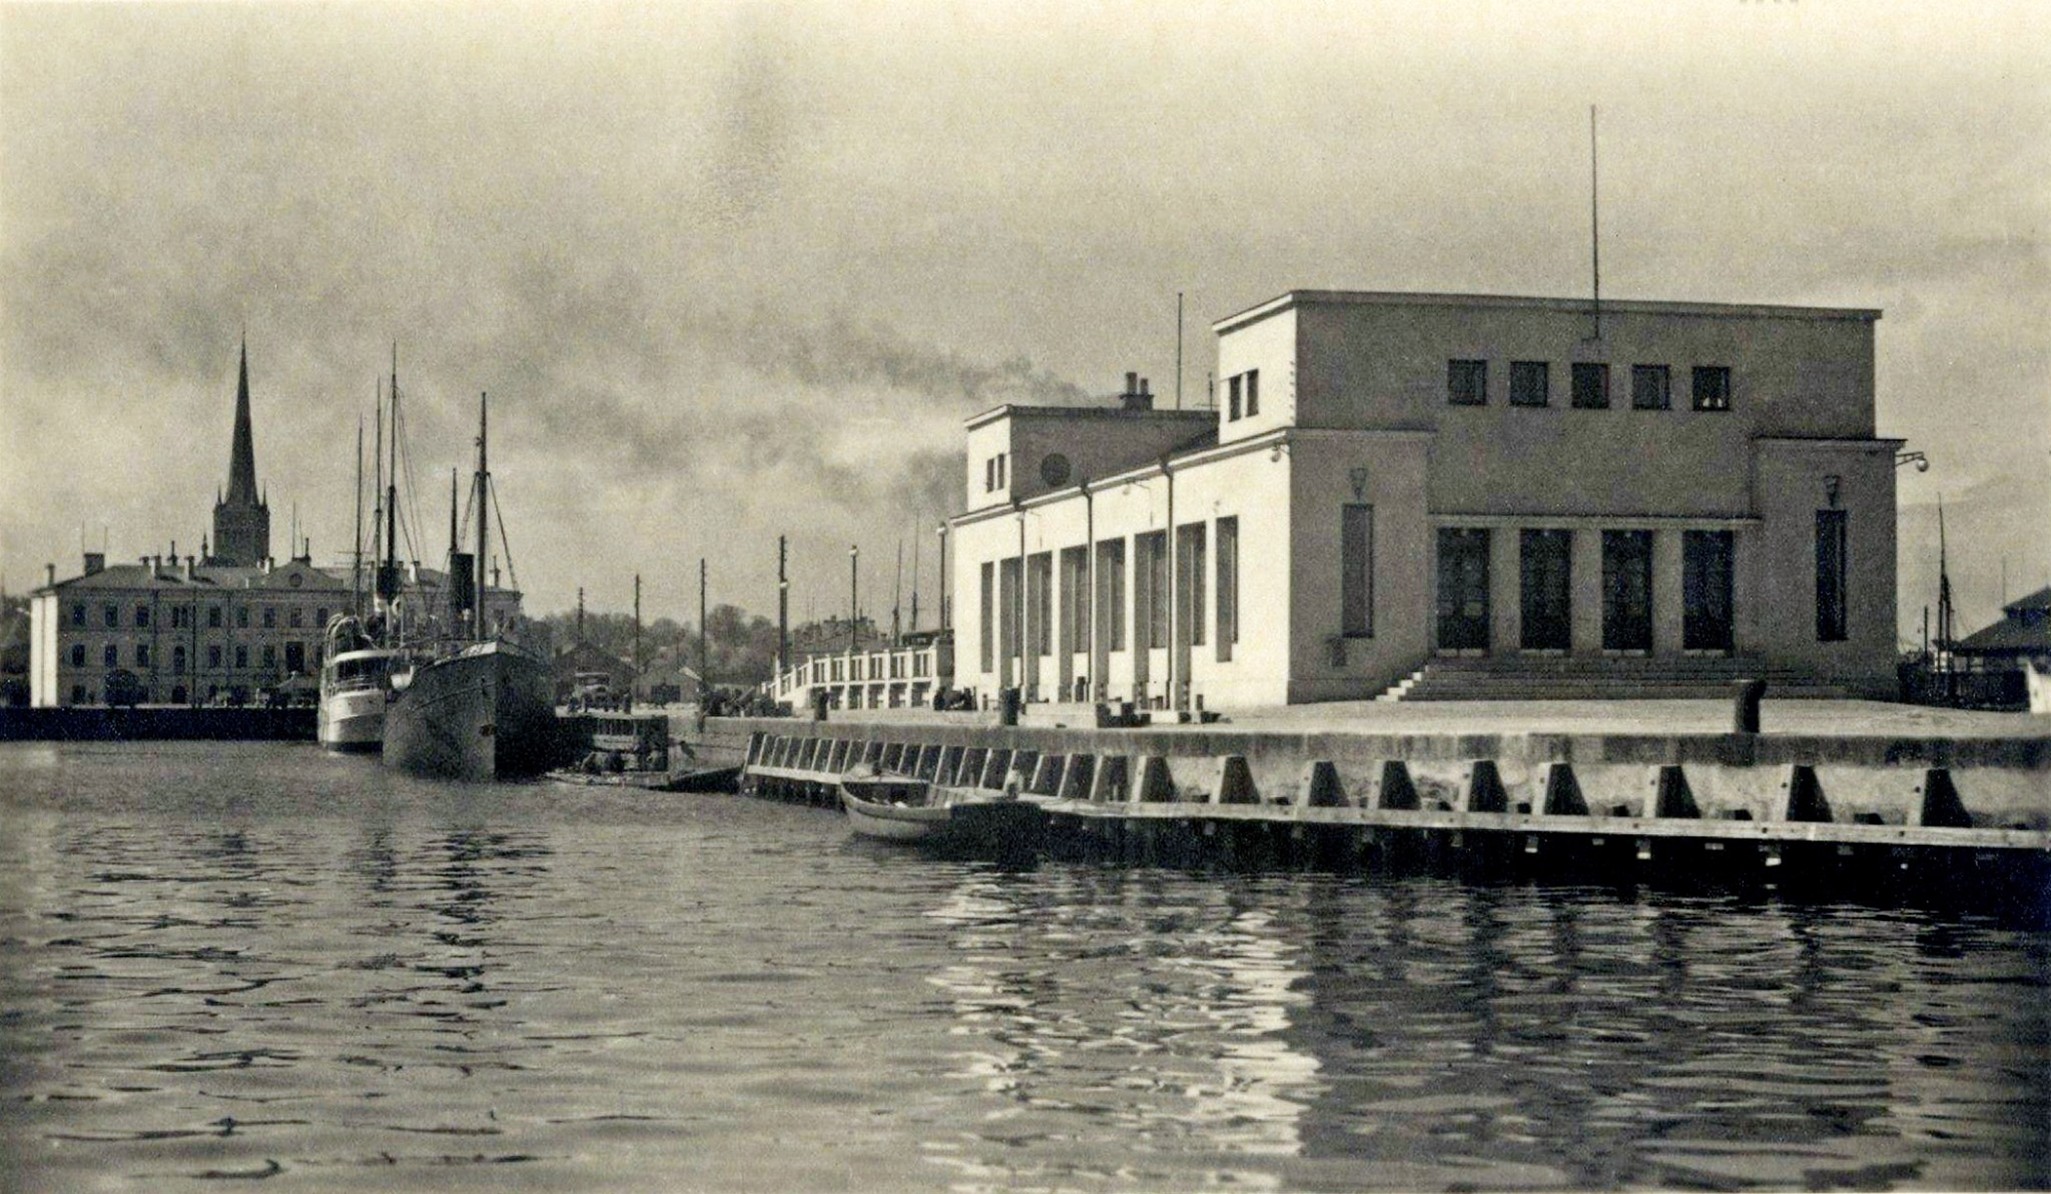 Dateerimata vaade Tallinna sadamala, praegune vanasadam. Tulenevalt valminud uuest reisijatehoonest paremal on pilt kuskil vahemikus 1936-1940, võimalik et 1938-1939. Taamal, vasakul, Oleviste silueti ees, on sadamakapteni hoone.